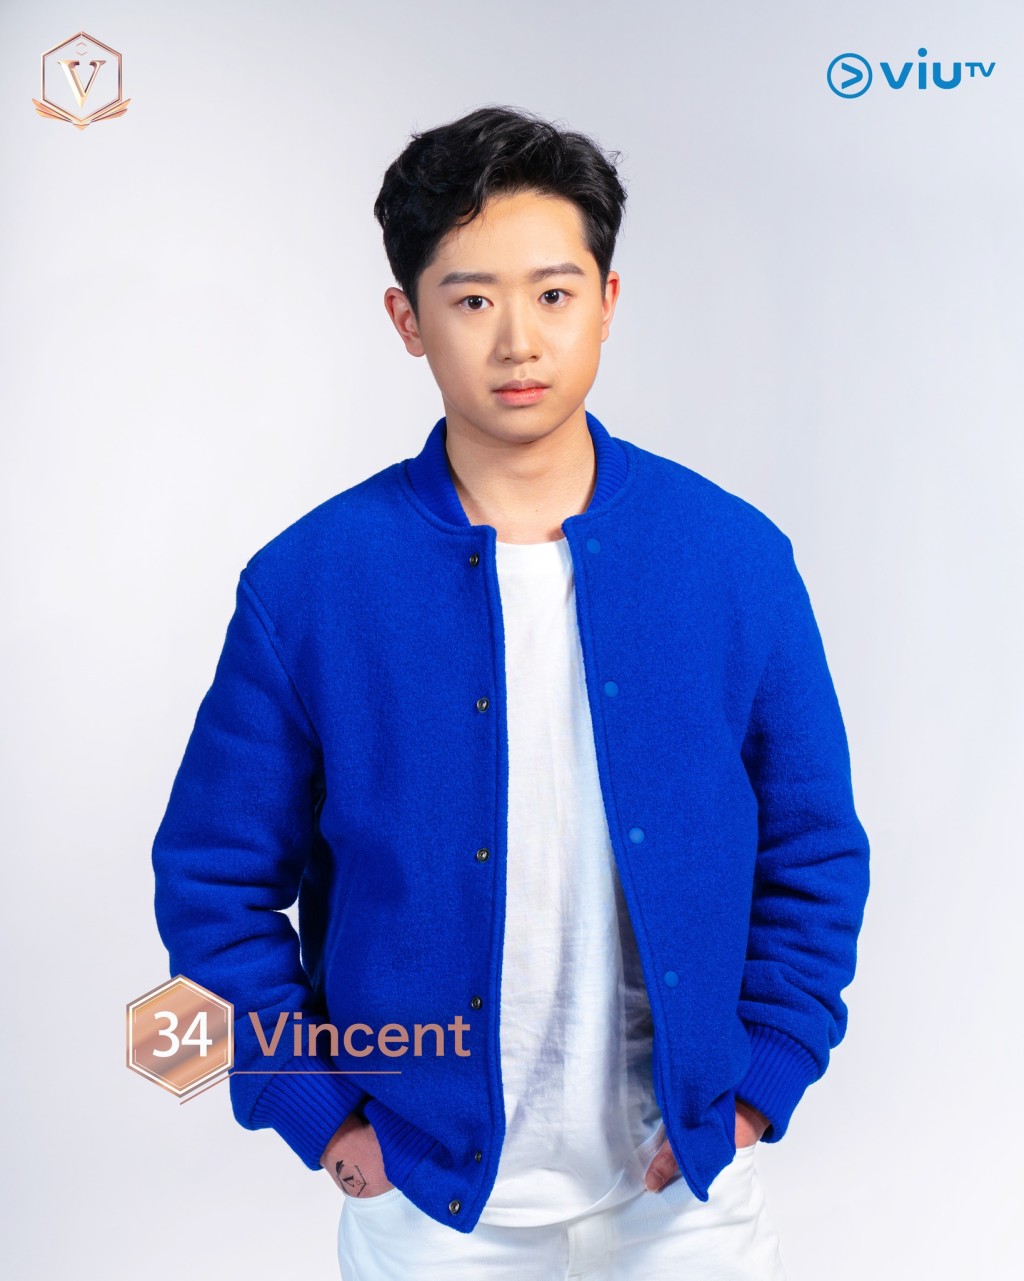 穎生（Vincent） 年齡： 20 職業：學生 擅長：唱歌、彈鋼琴、彈結他 IG：vinlaw1221 #溫哥華參賽者